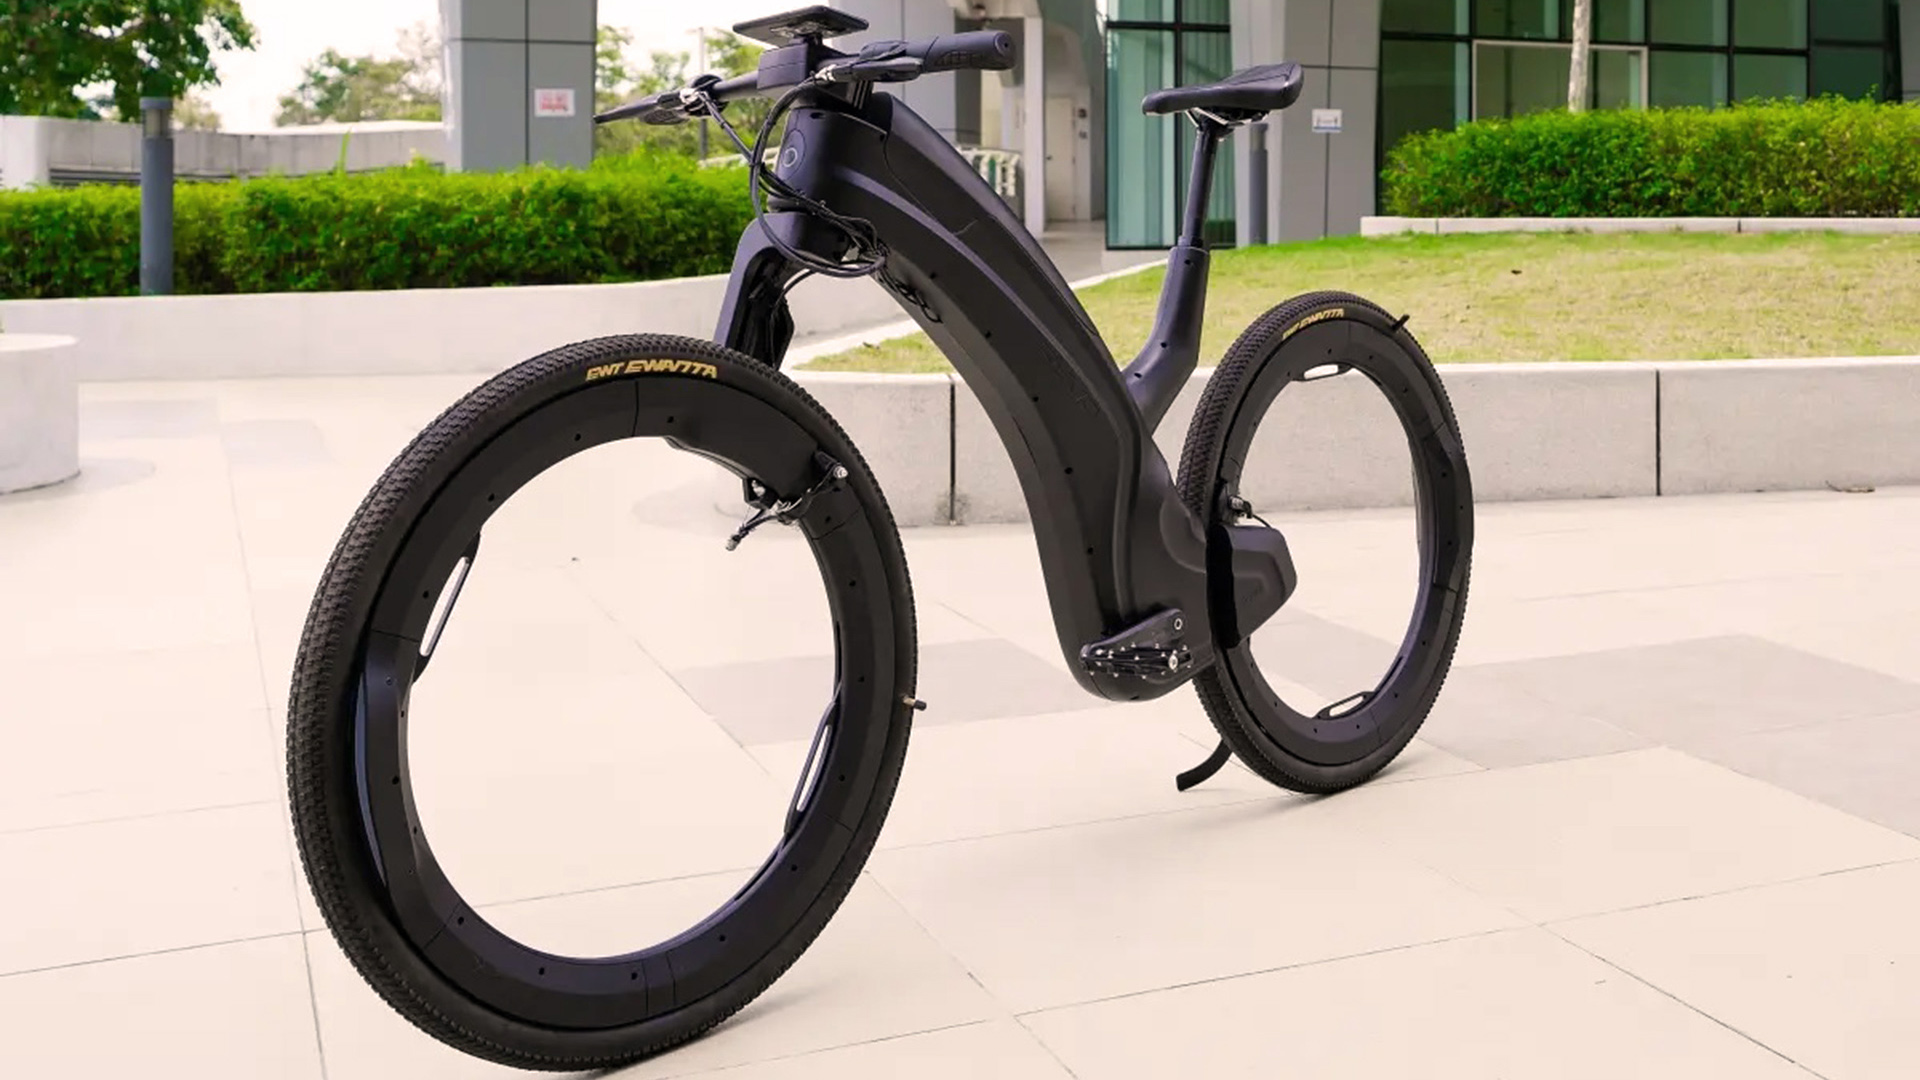 Cómo funciona la bicicleta eléctrica que tiene rayos en sus ruedas - Infobae